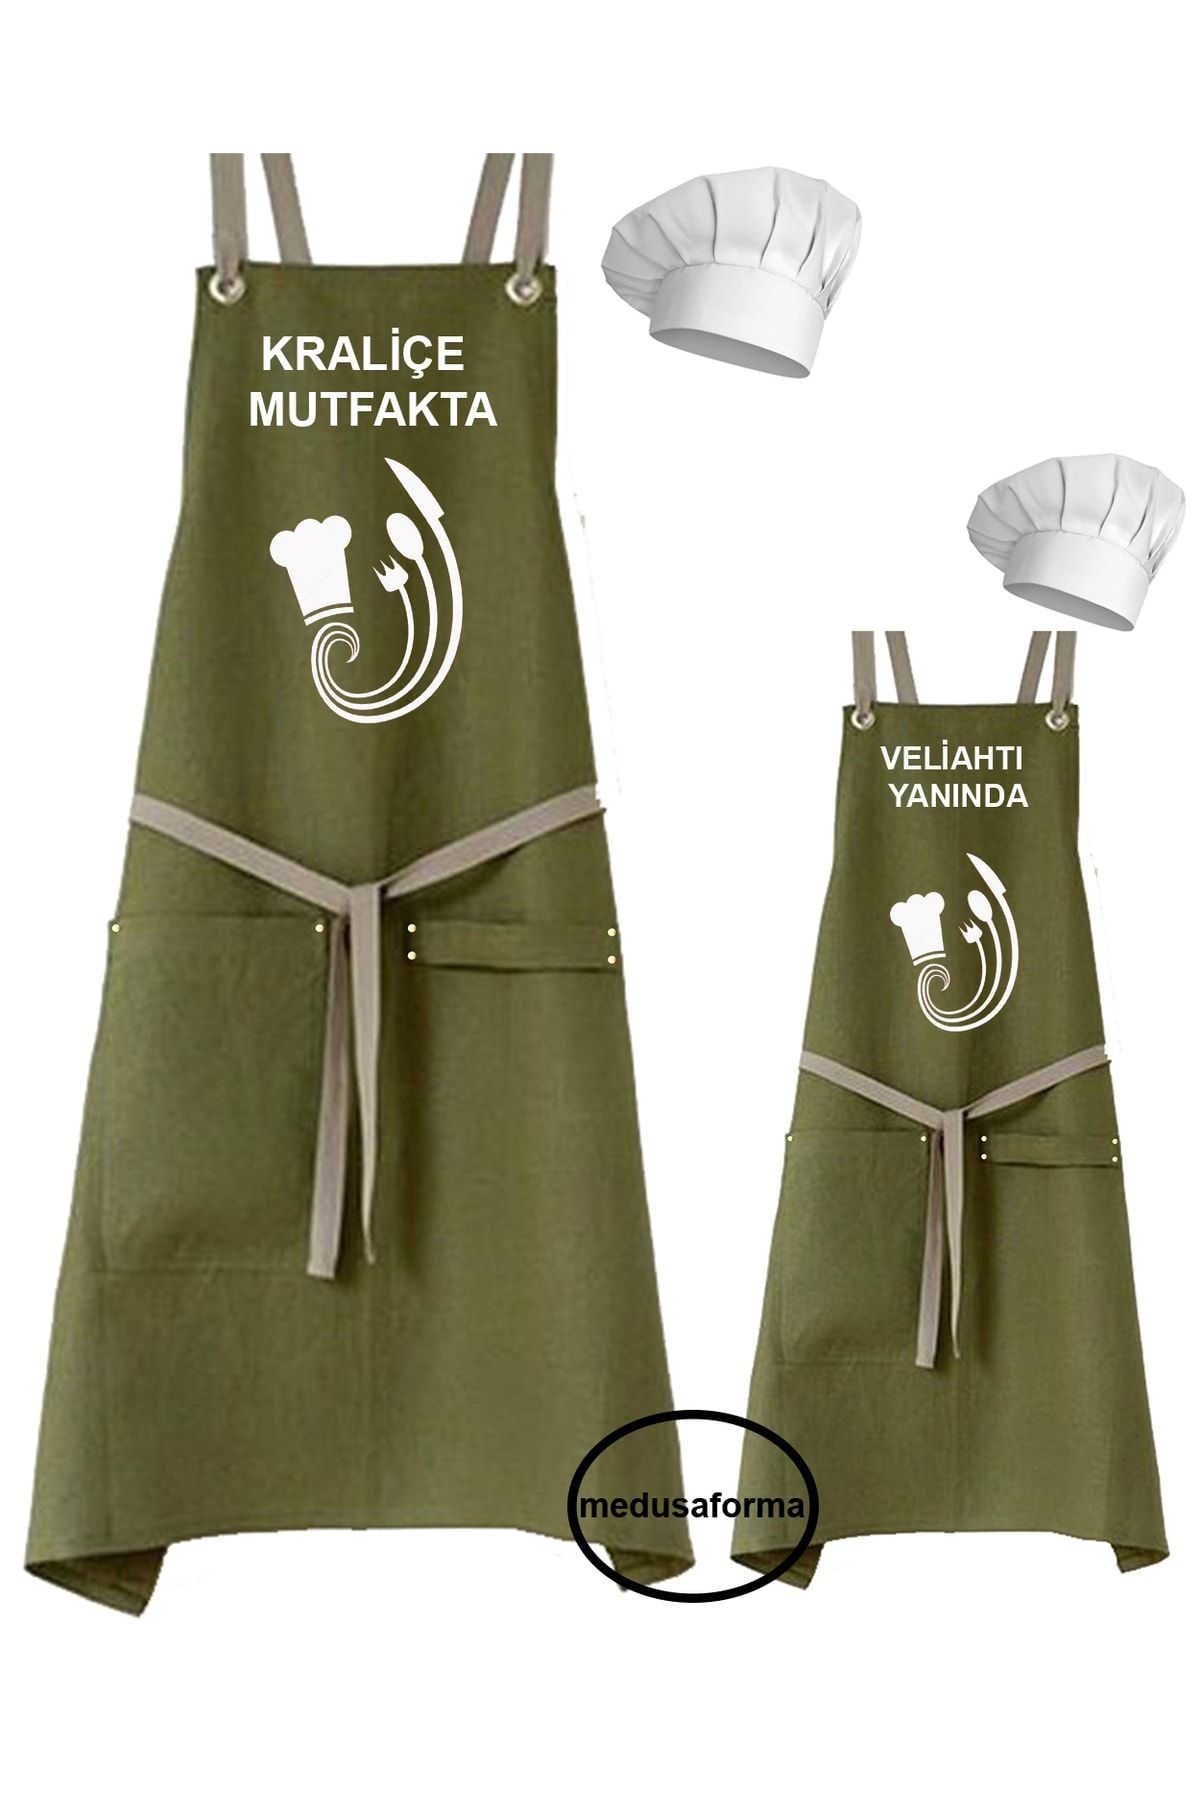 medusaforma Anne - Baba - Çocuk Nakışlı Önlük Kombinleri Aşçı Kıyafeti Master Şef Mutfak Önlüğü Chef Kepli Takım